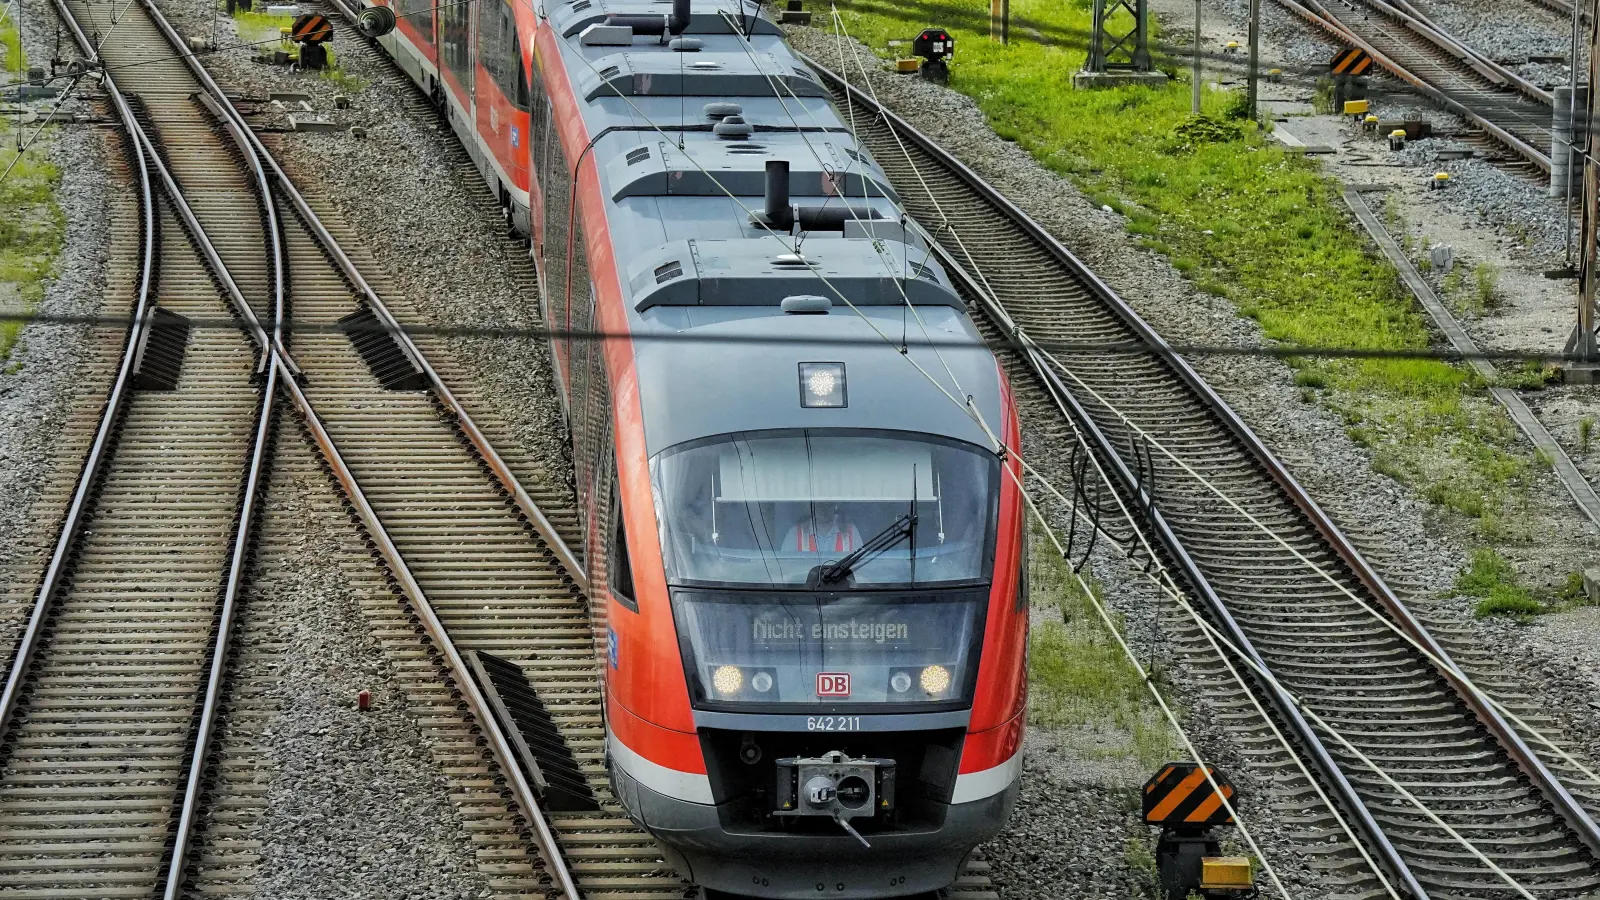 Mit den Planungen für die Bahnstrecke zwischen Augsburg und Ulm ist auch die Zukunft der Bahnhöfe an der Bestandsstrecke verknüpft. Inzwischen gibt es Zweifel, ob die Bahn den barrierefreien Ausbau umsetzt. (Foto: MJT)